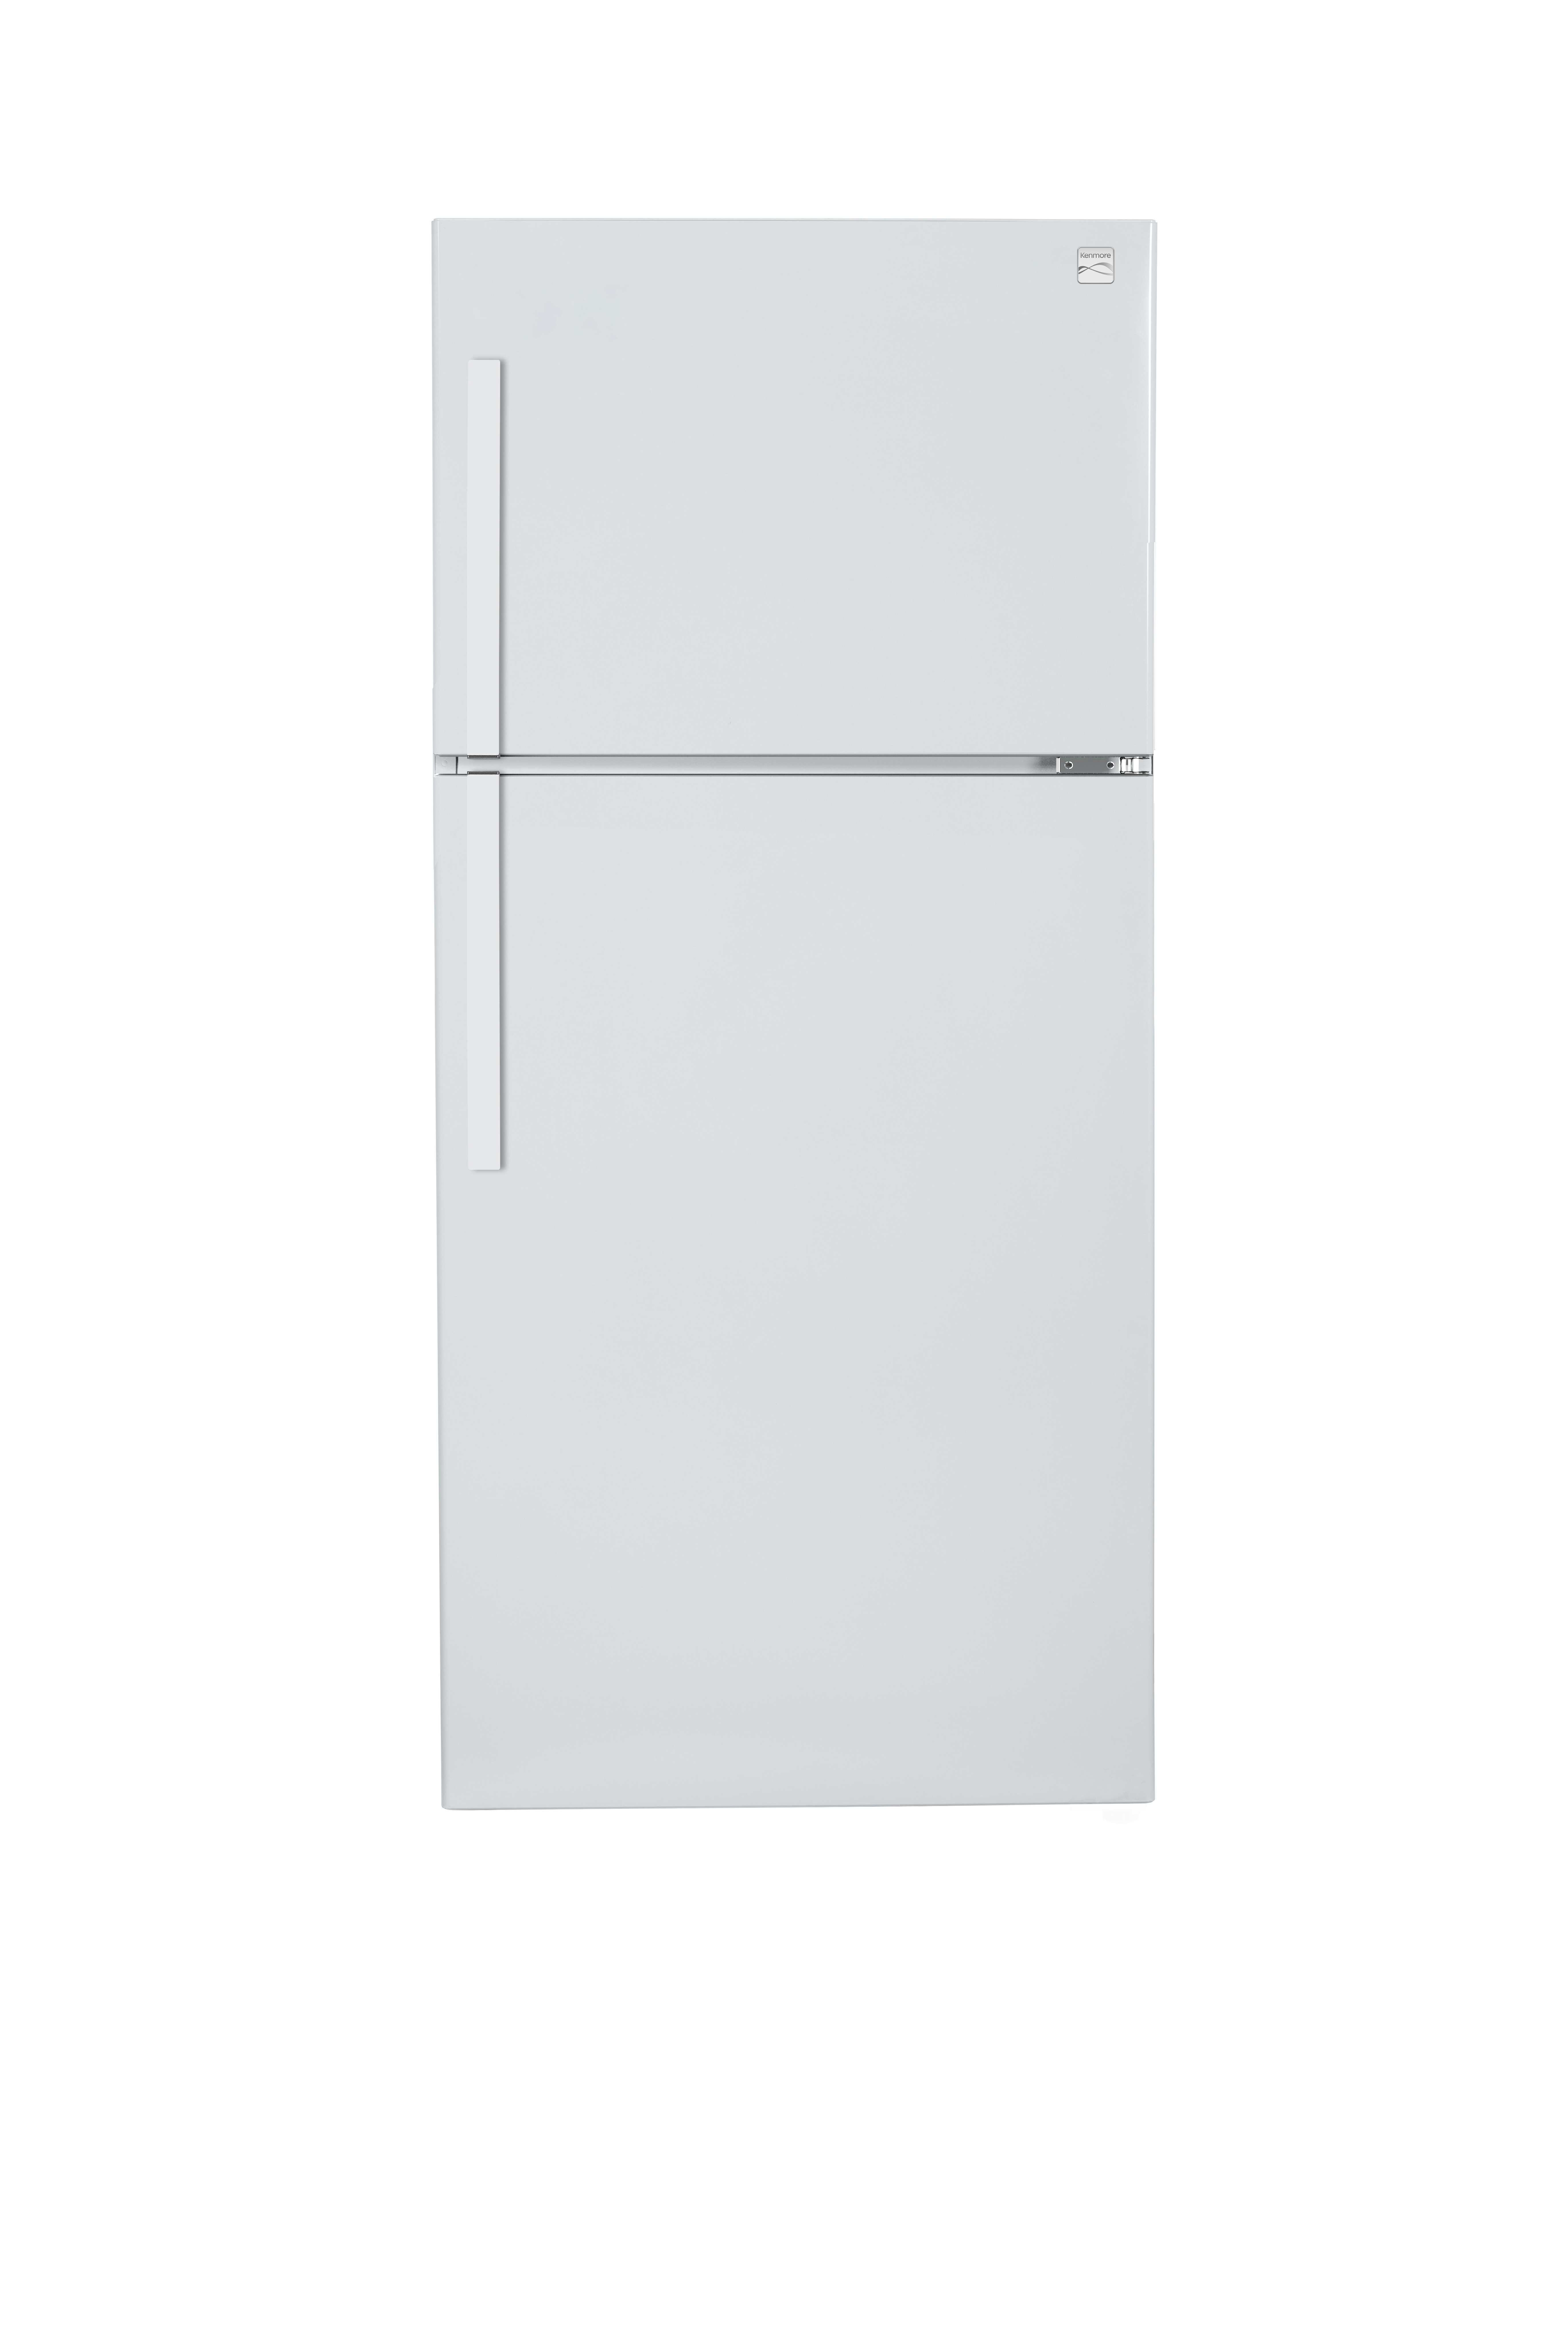 Kenmore 60762  18.3 cu. ft. Deluxe Top-Freezer Refrigerator eStar Certified - White